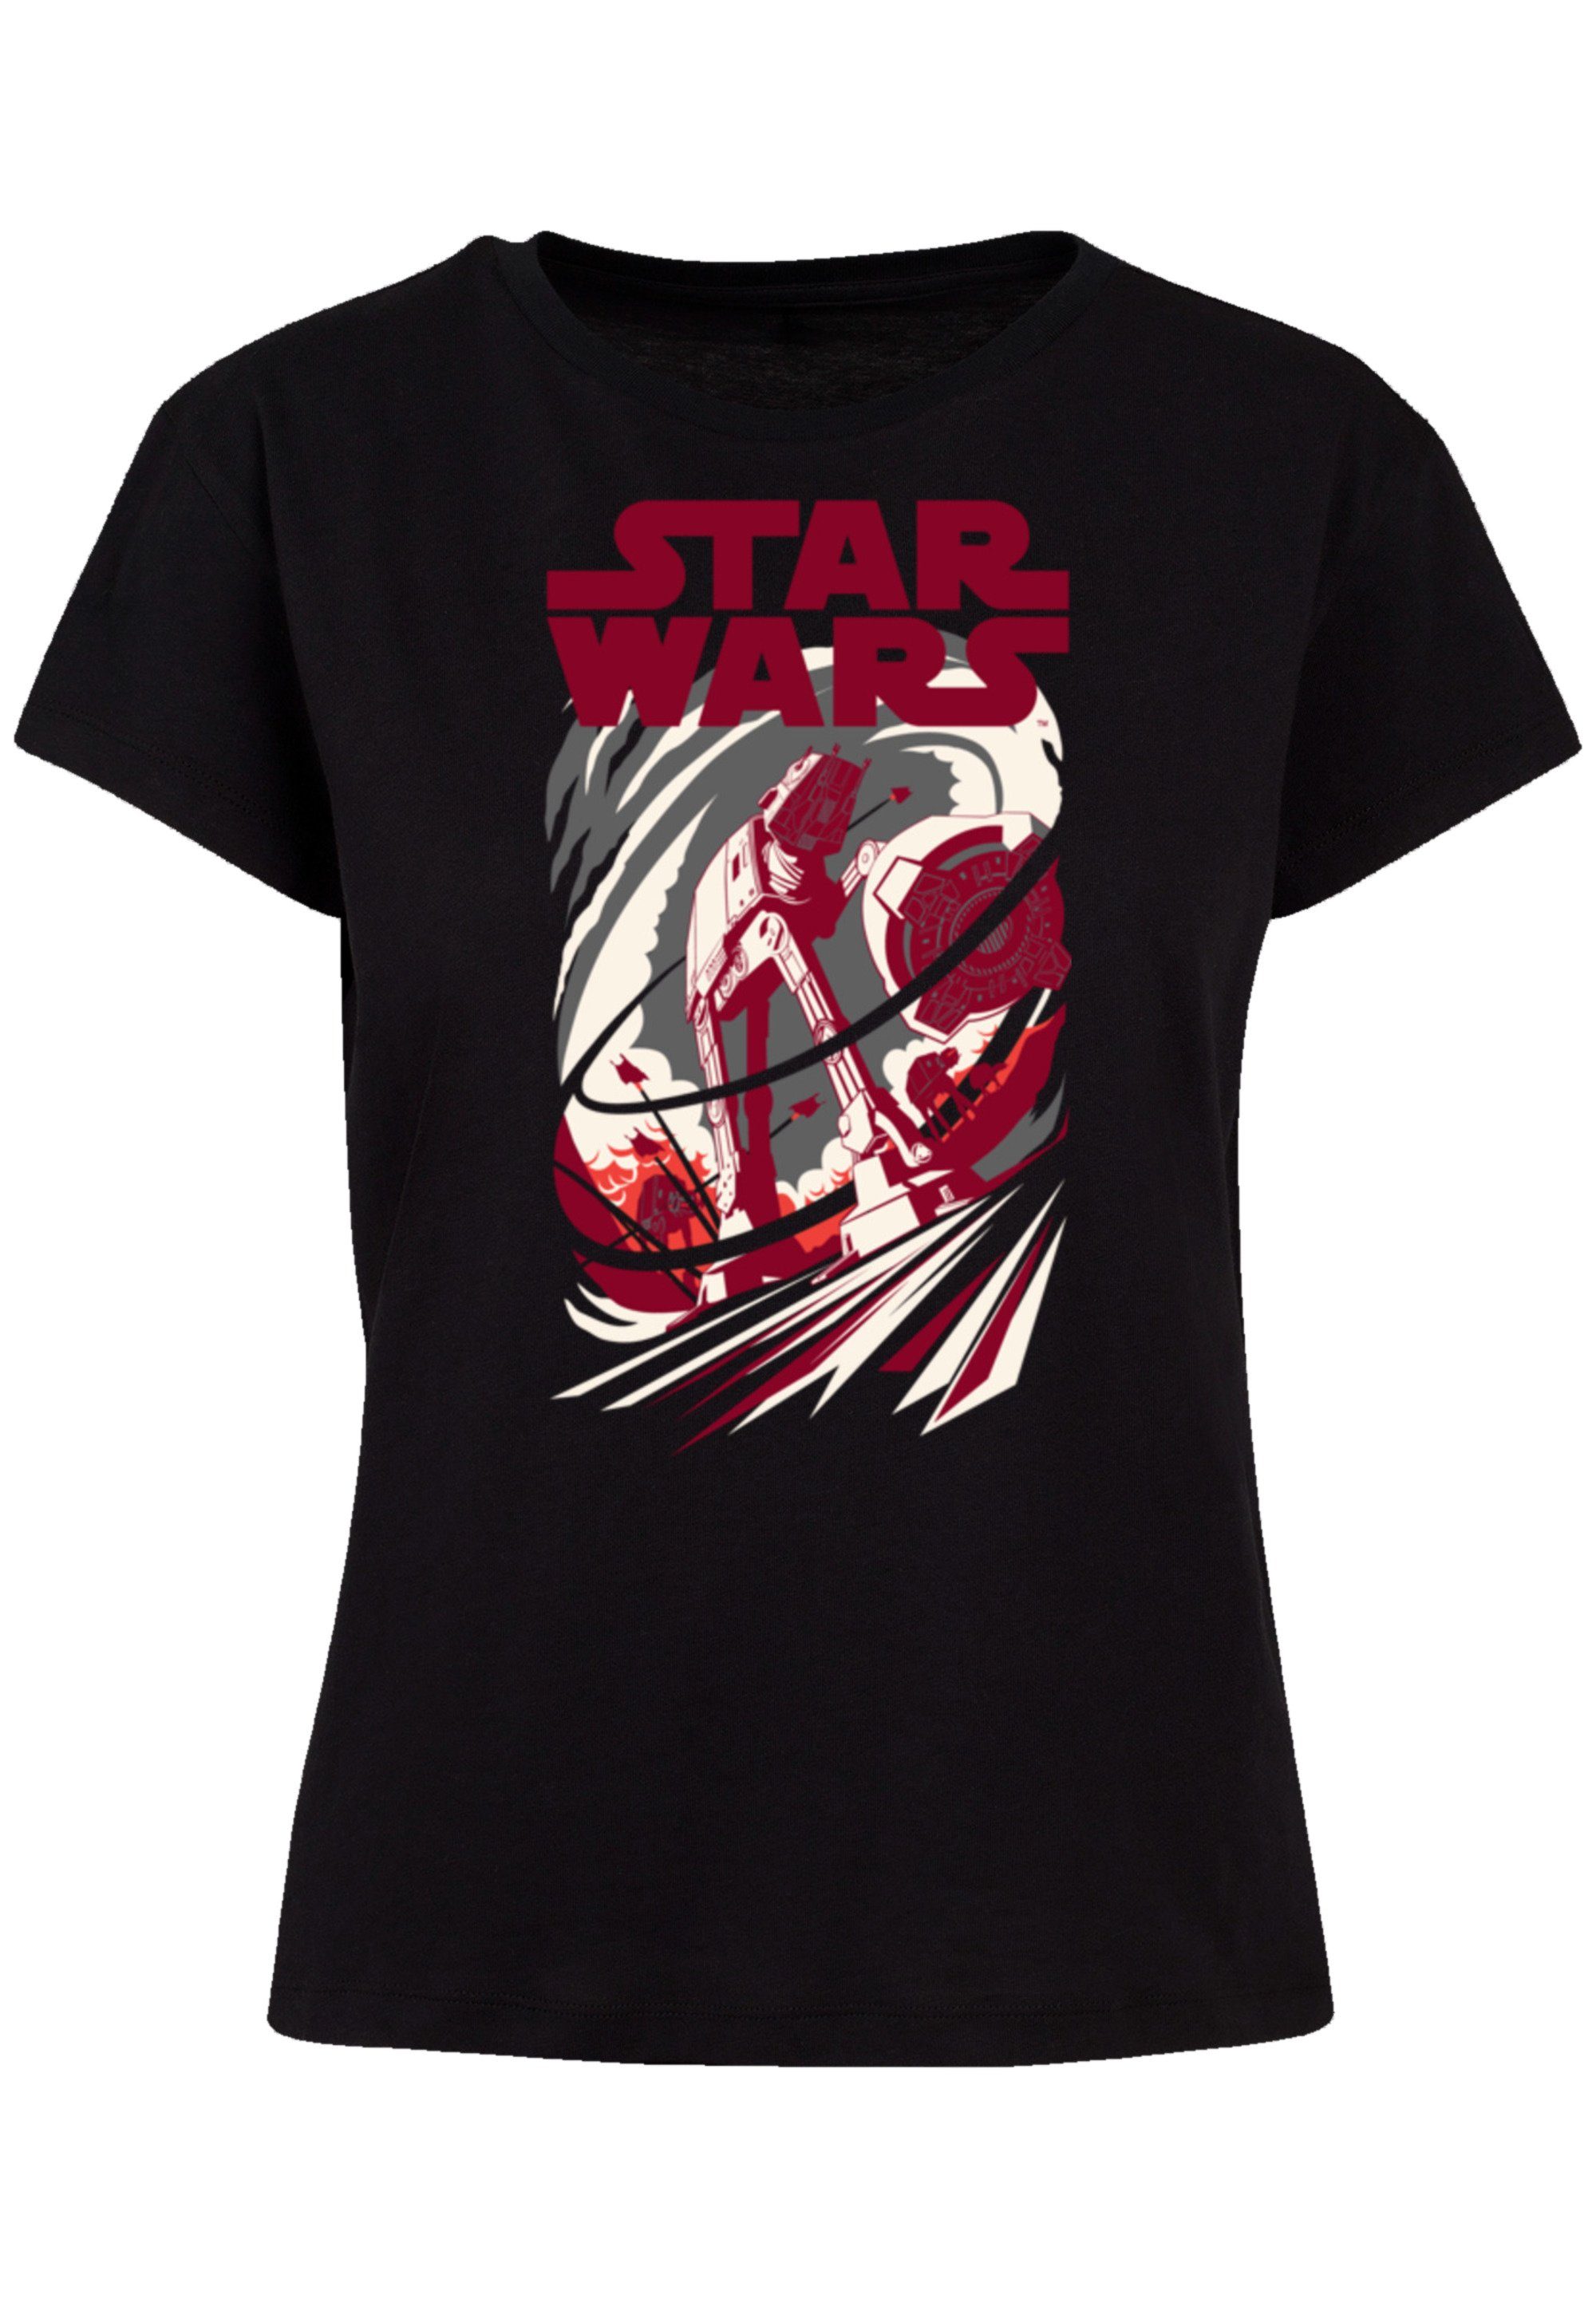 Turmoil Qualität Wars Premium F4NT4STIC Star T-Shirt